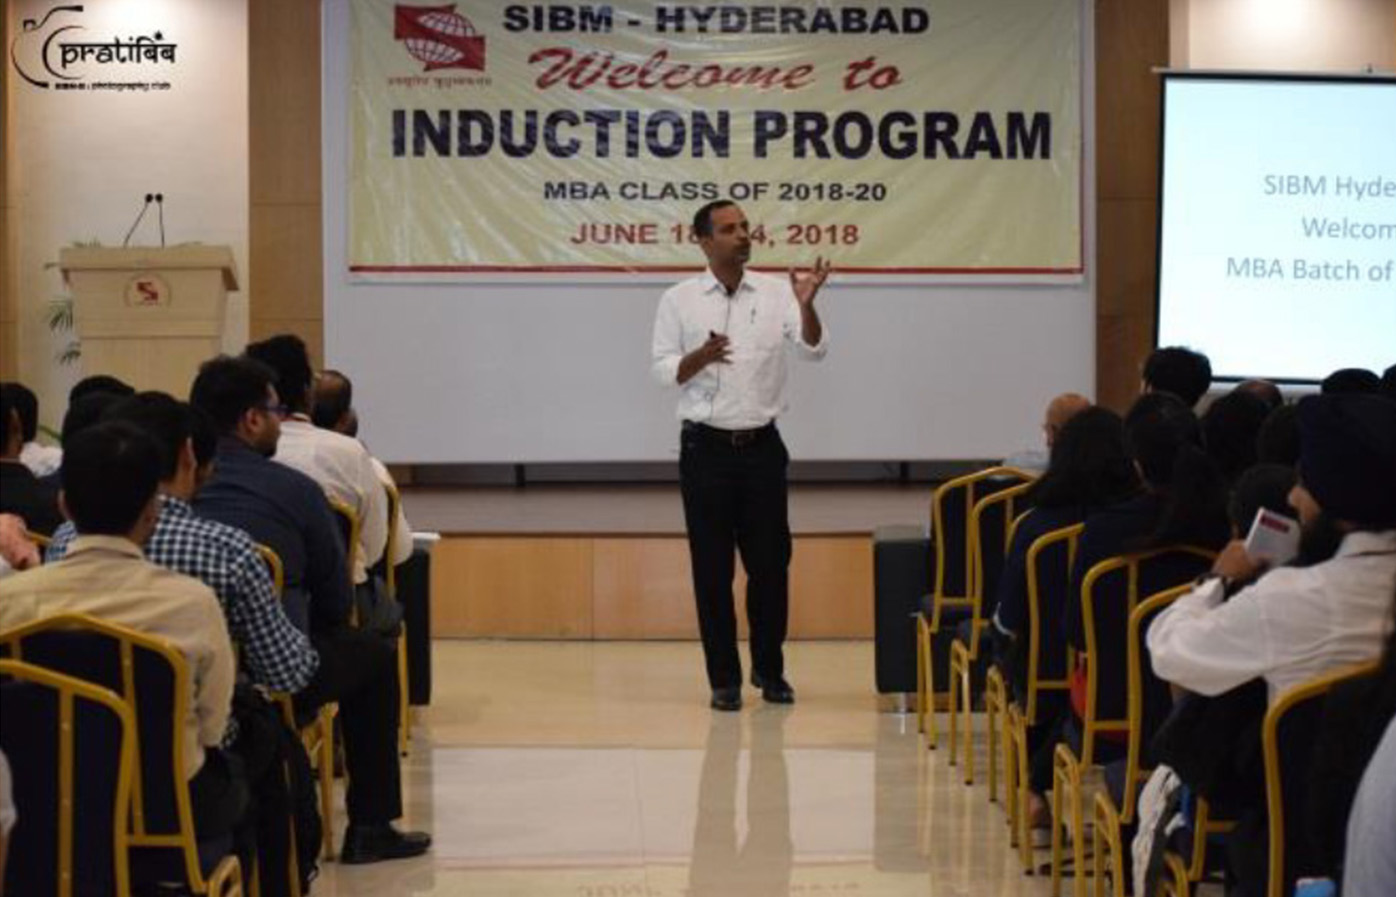 Induction Program MBA 2018-2020 of SIBM